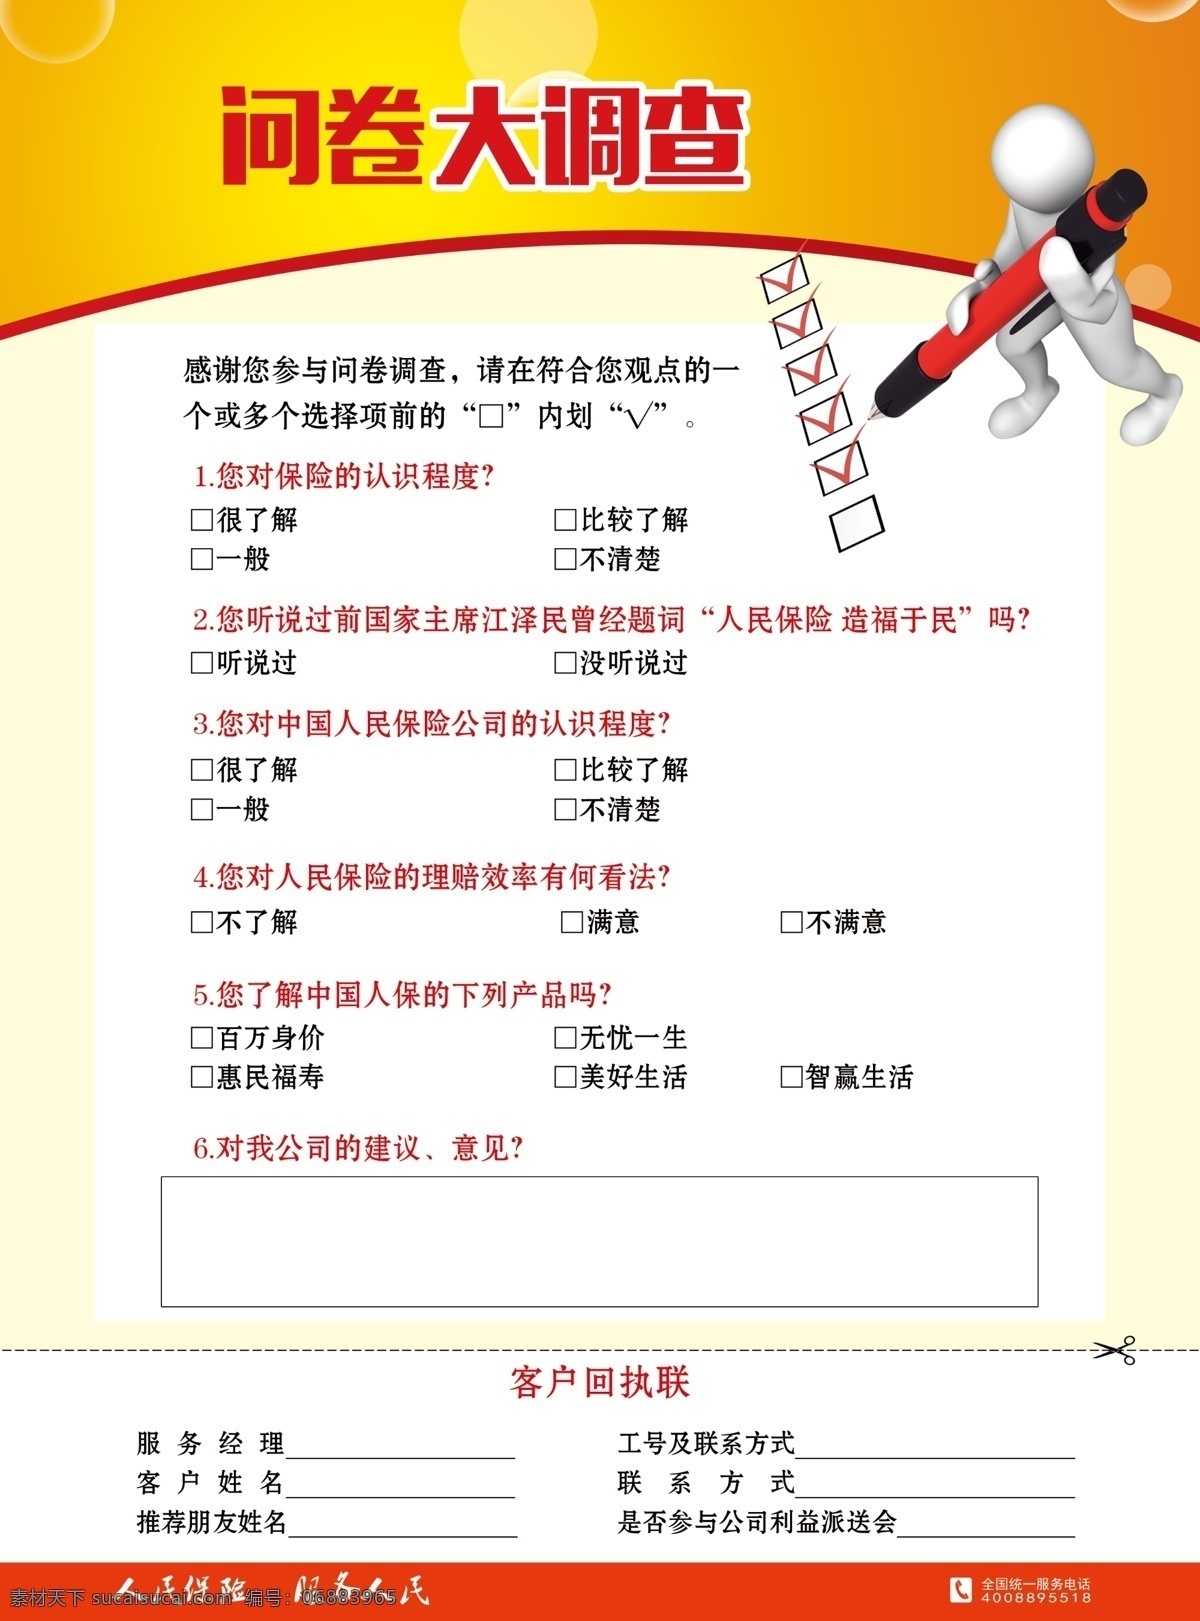 picc 宣传单 问卷调查 中国 人民 人寿保险 白色